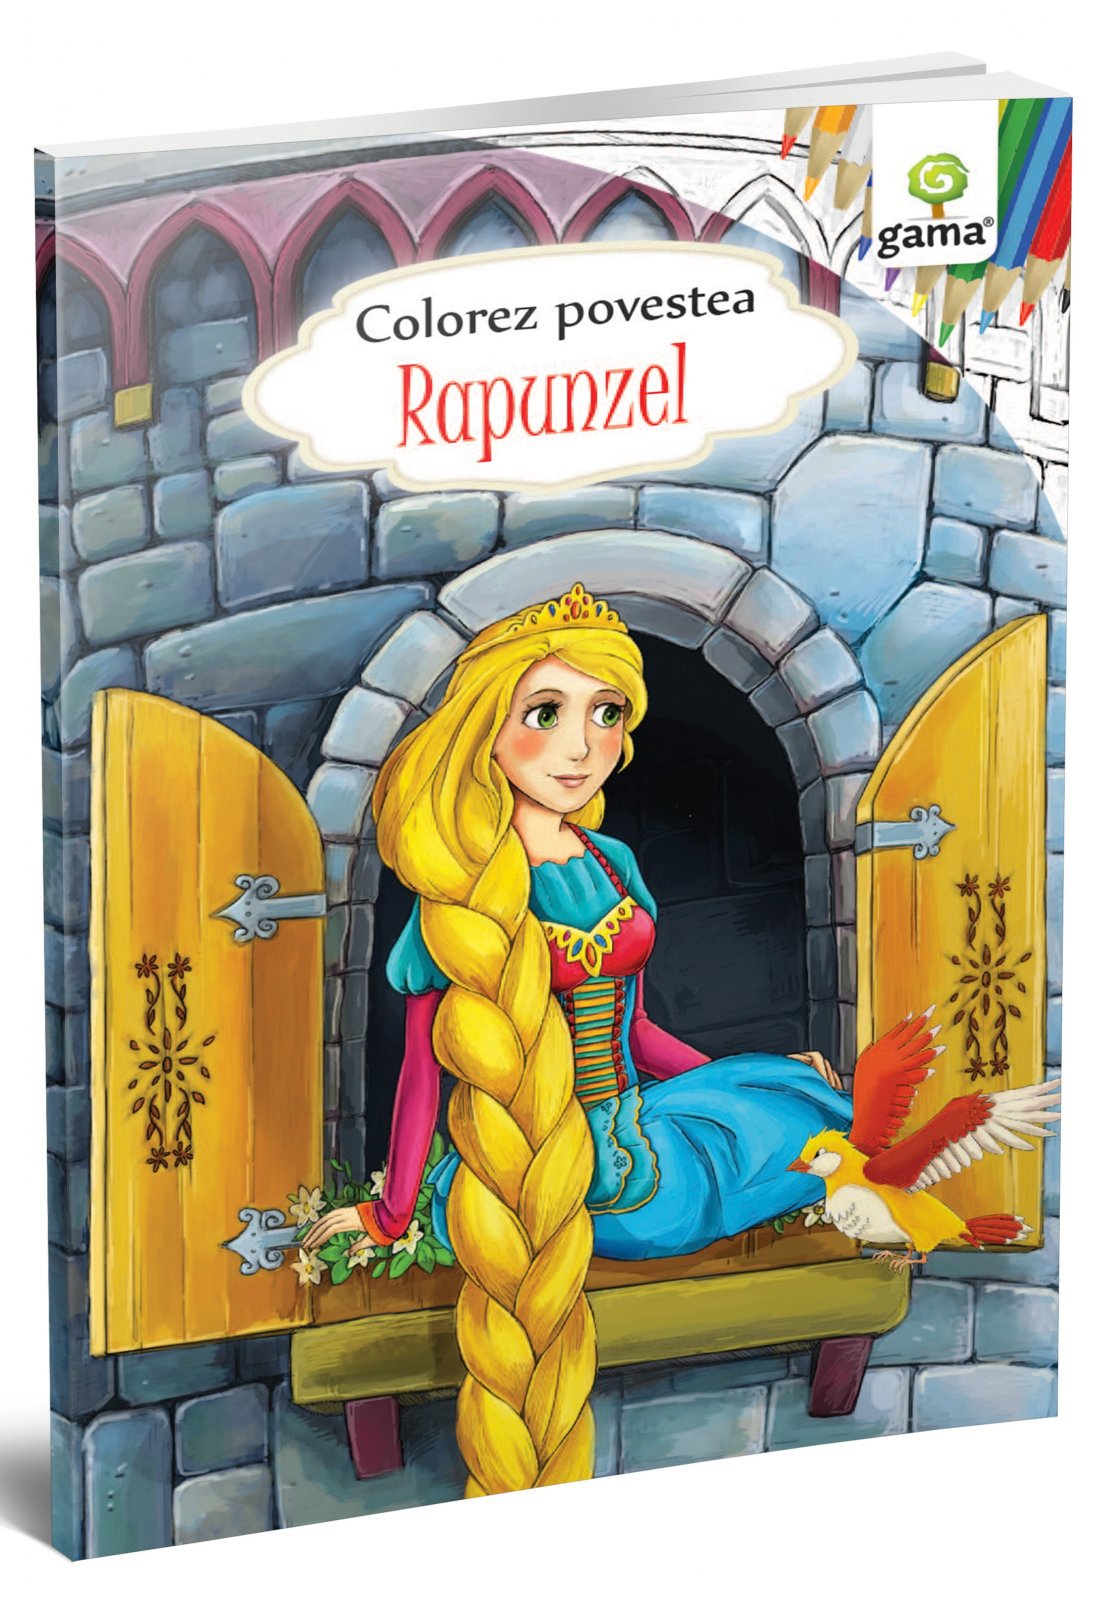 Colorez povestea Rapunzel